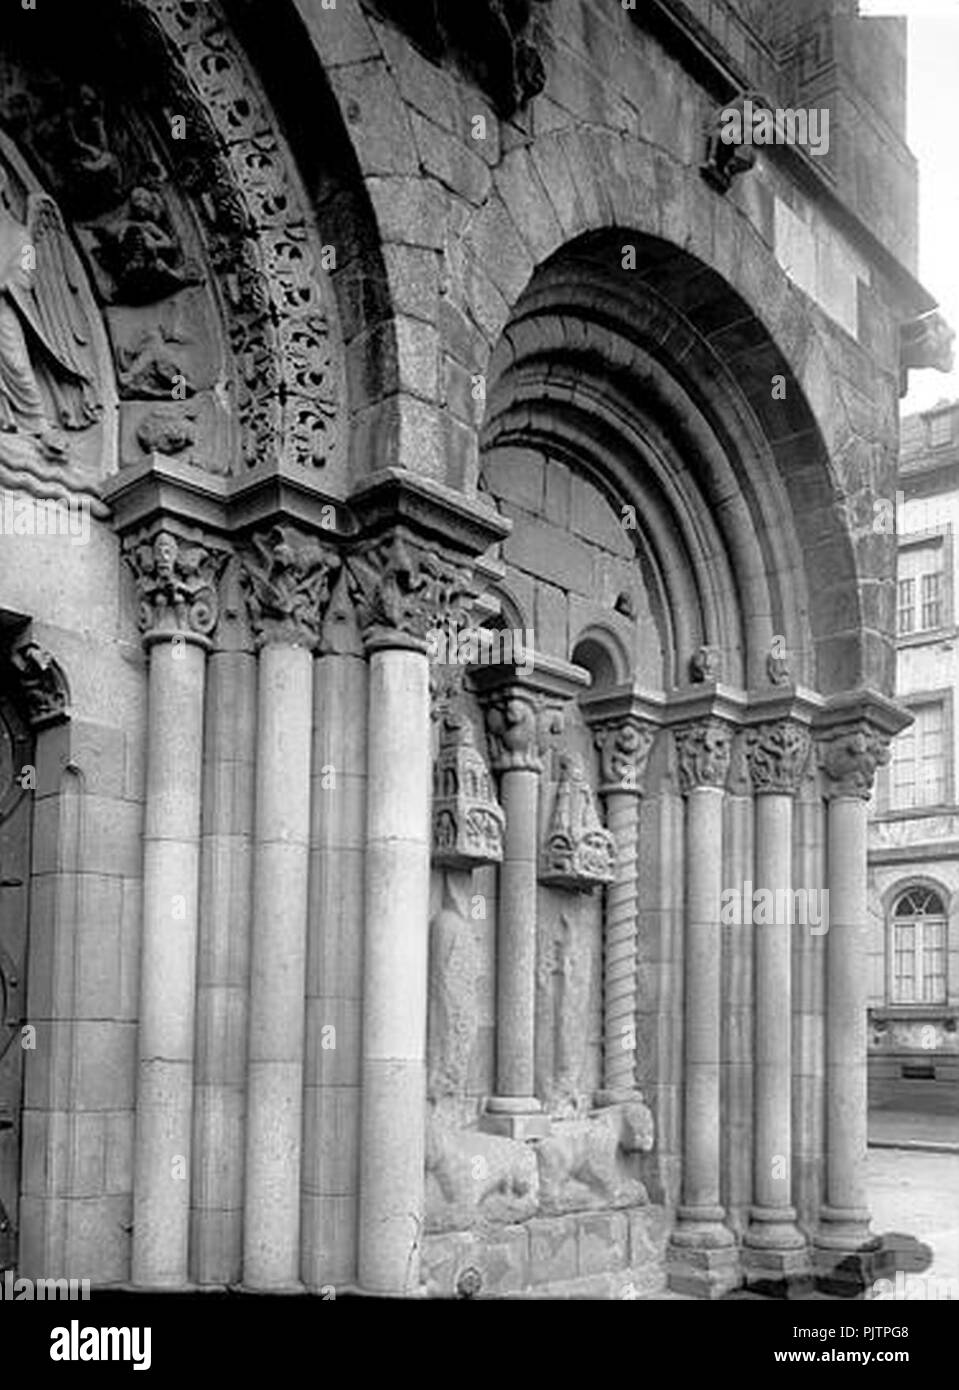 Basilique Saint-Sauveur de Dinan (Côtes d'Armor) portail sud-ouest Sap01 mh033338 p. Stock Photo